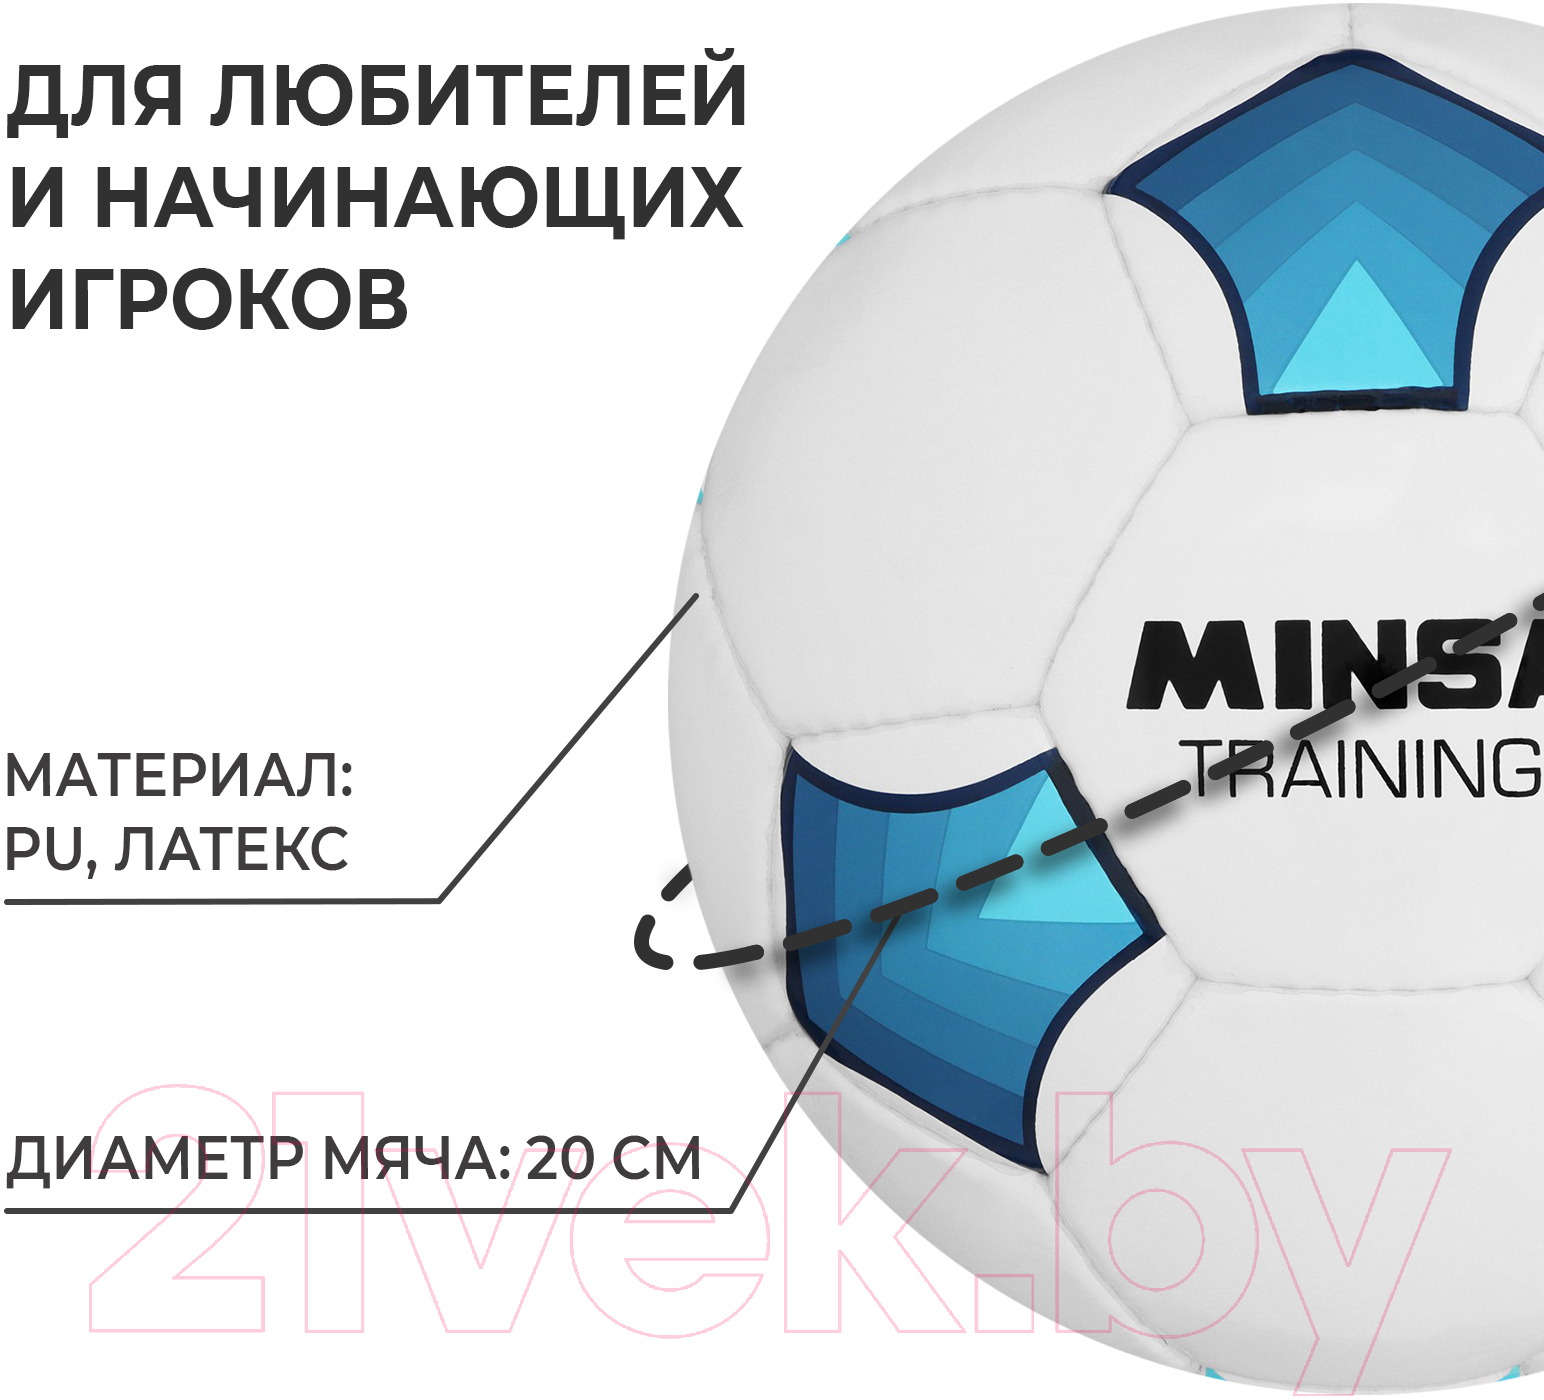 Футбольный мяч Minsa Training 9376736